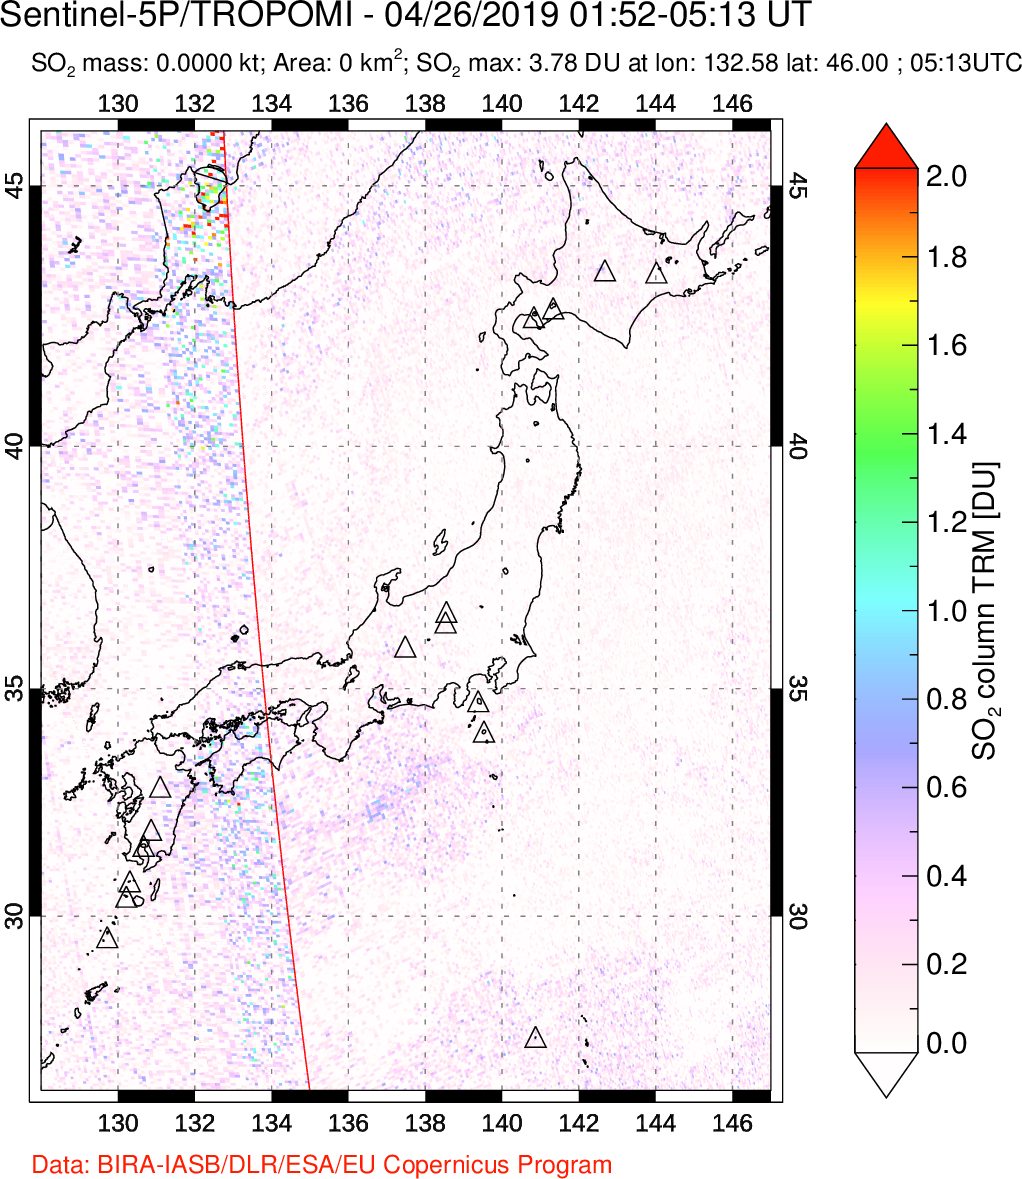 A sulfur dioxide image over Japan on Apr 26, 2019.